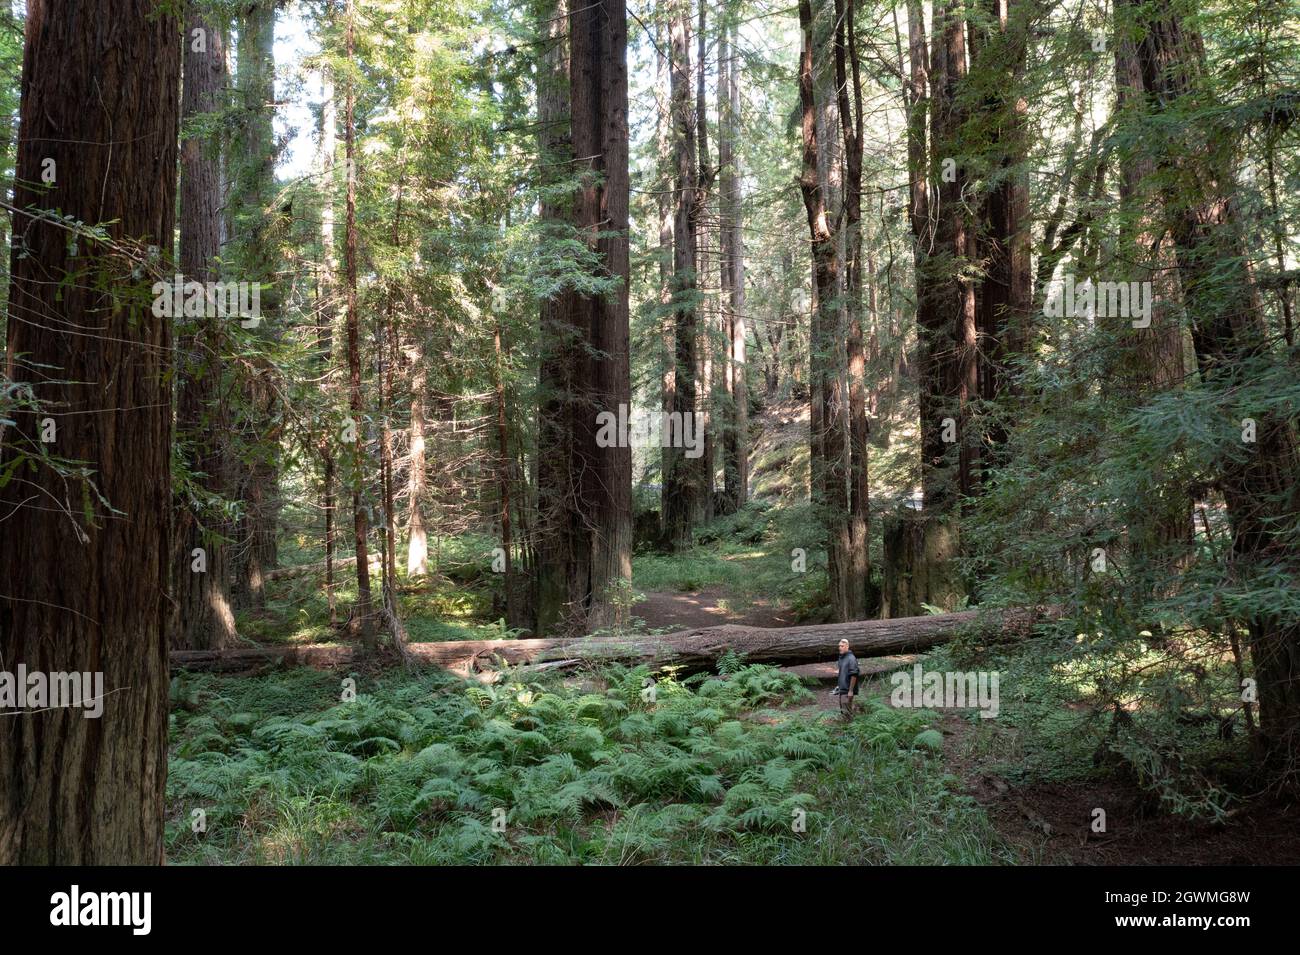 A Mendocino, California, crescono massicci alberi di sequoia costieri. Questa regione della California settentrionale ospita estese foreste di sequoie. Foto Stock